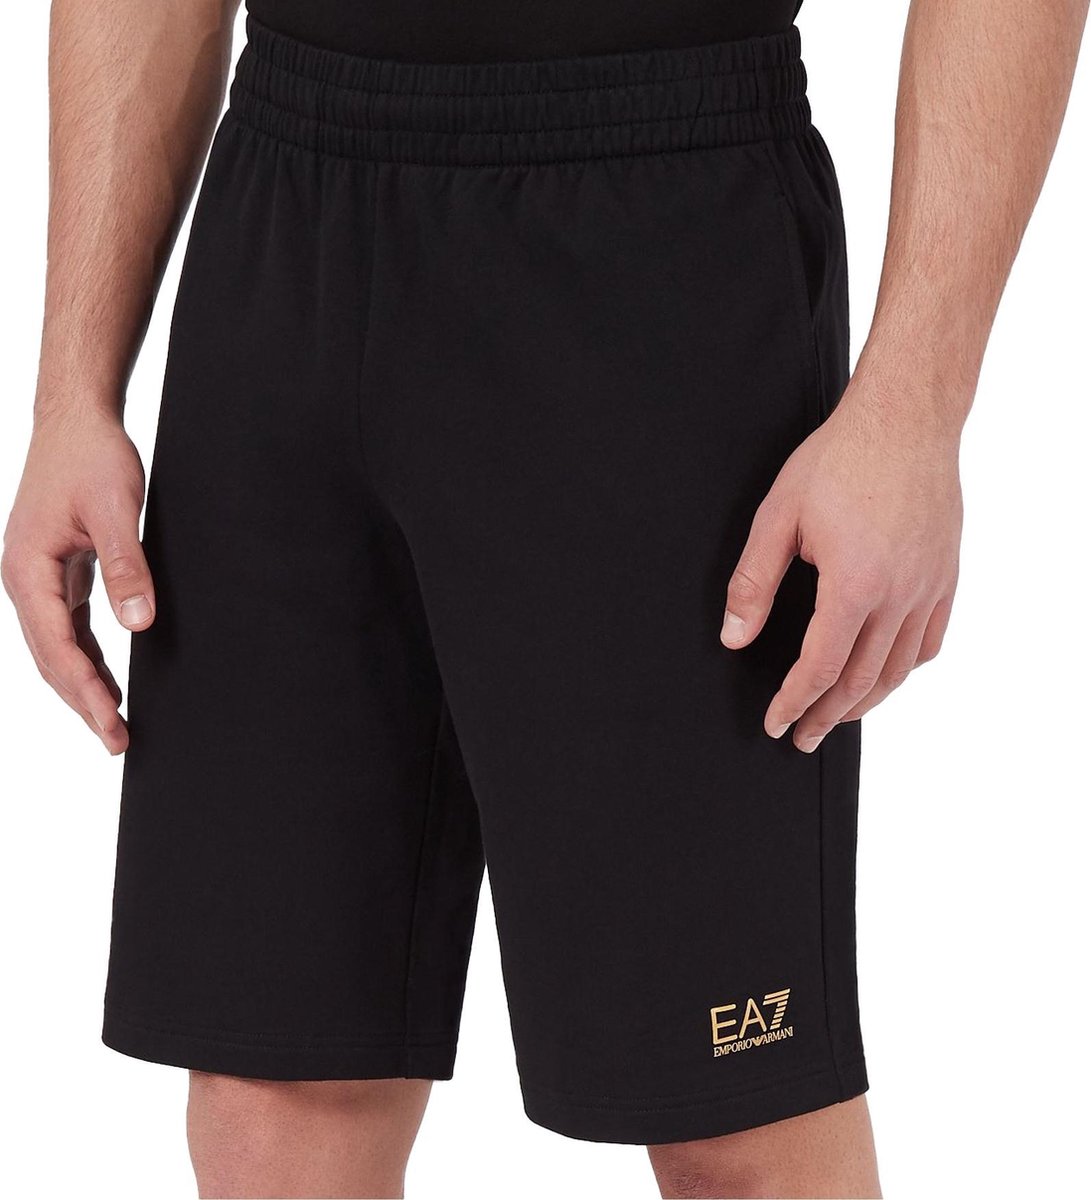 EA7 Sportbroek - Maat XL - Mannen - zwart/goud